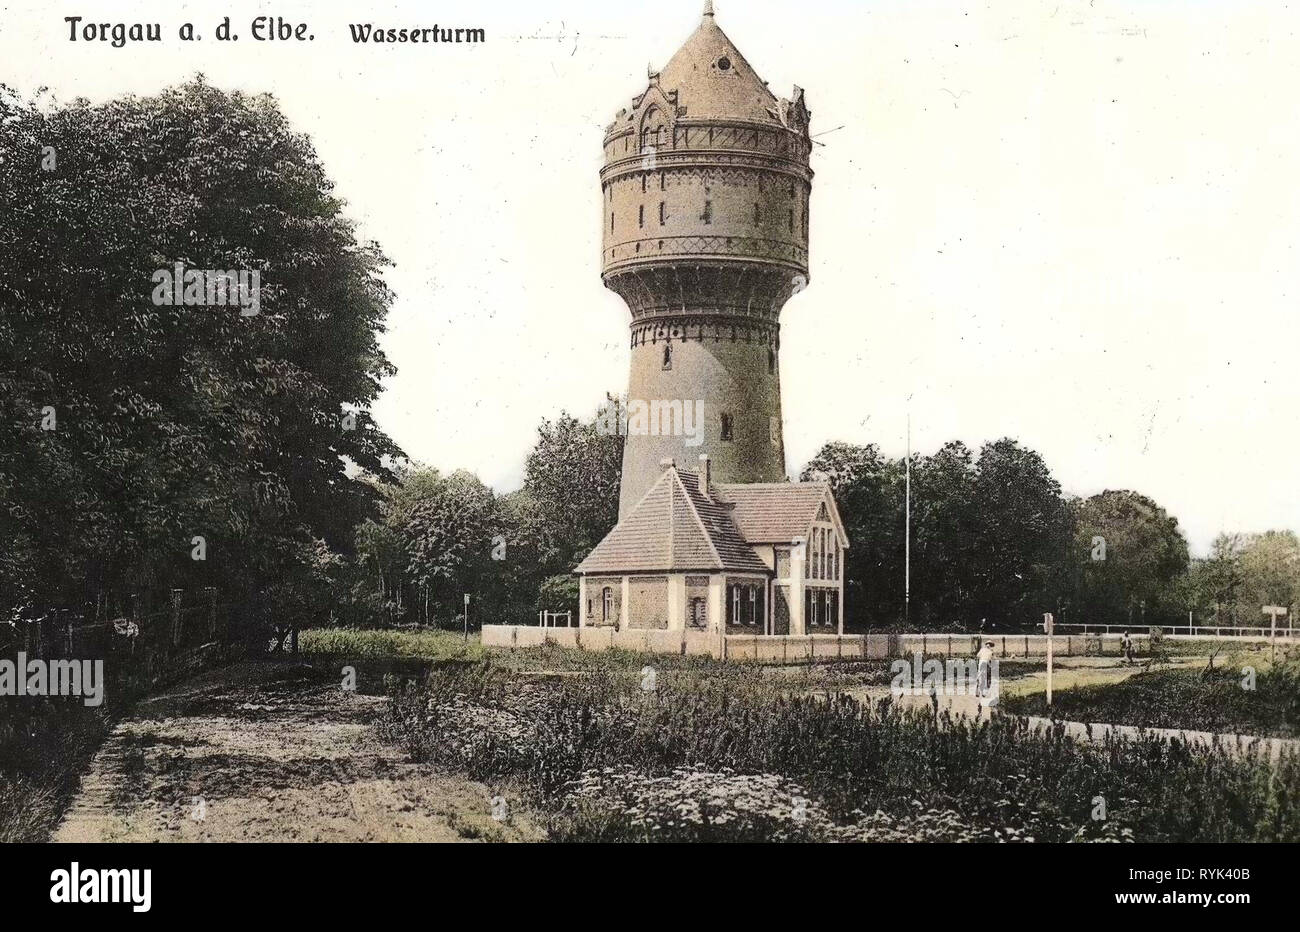 Wasserturm (Torgau, Am Wasserturm), 1914, Landkreis Nordsachsen, Torgau, Wasserturm, Germany Stock Photo